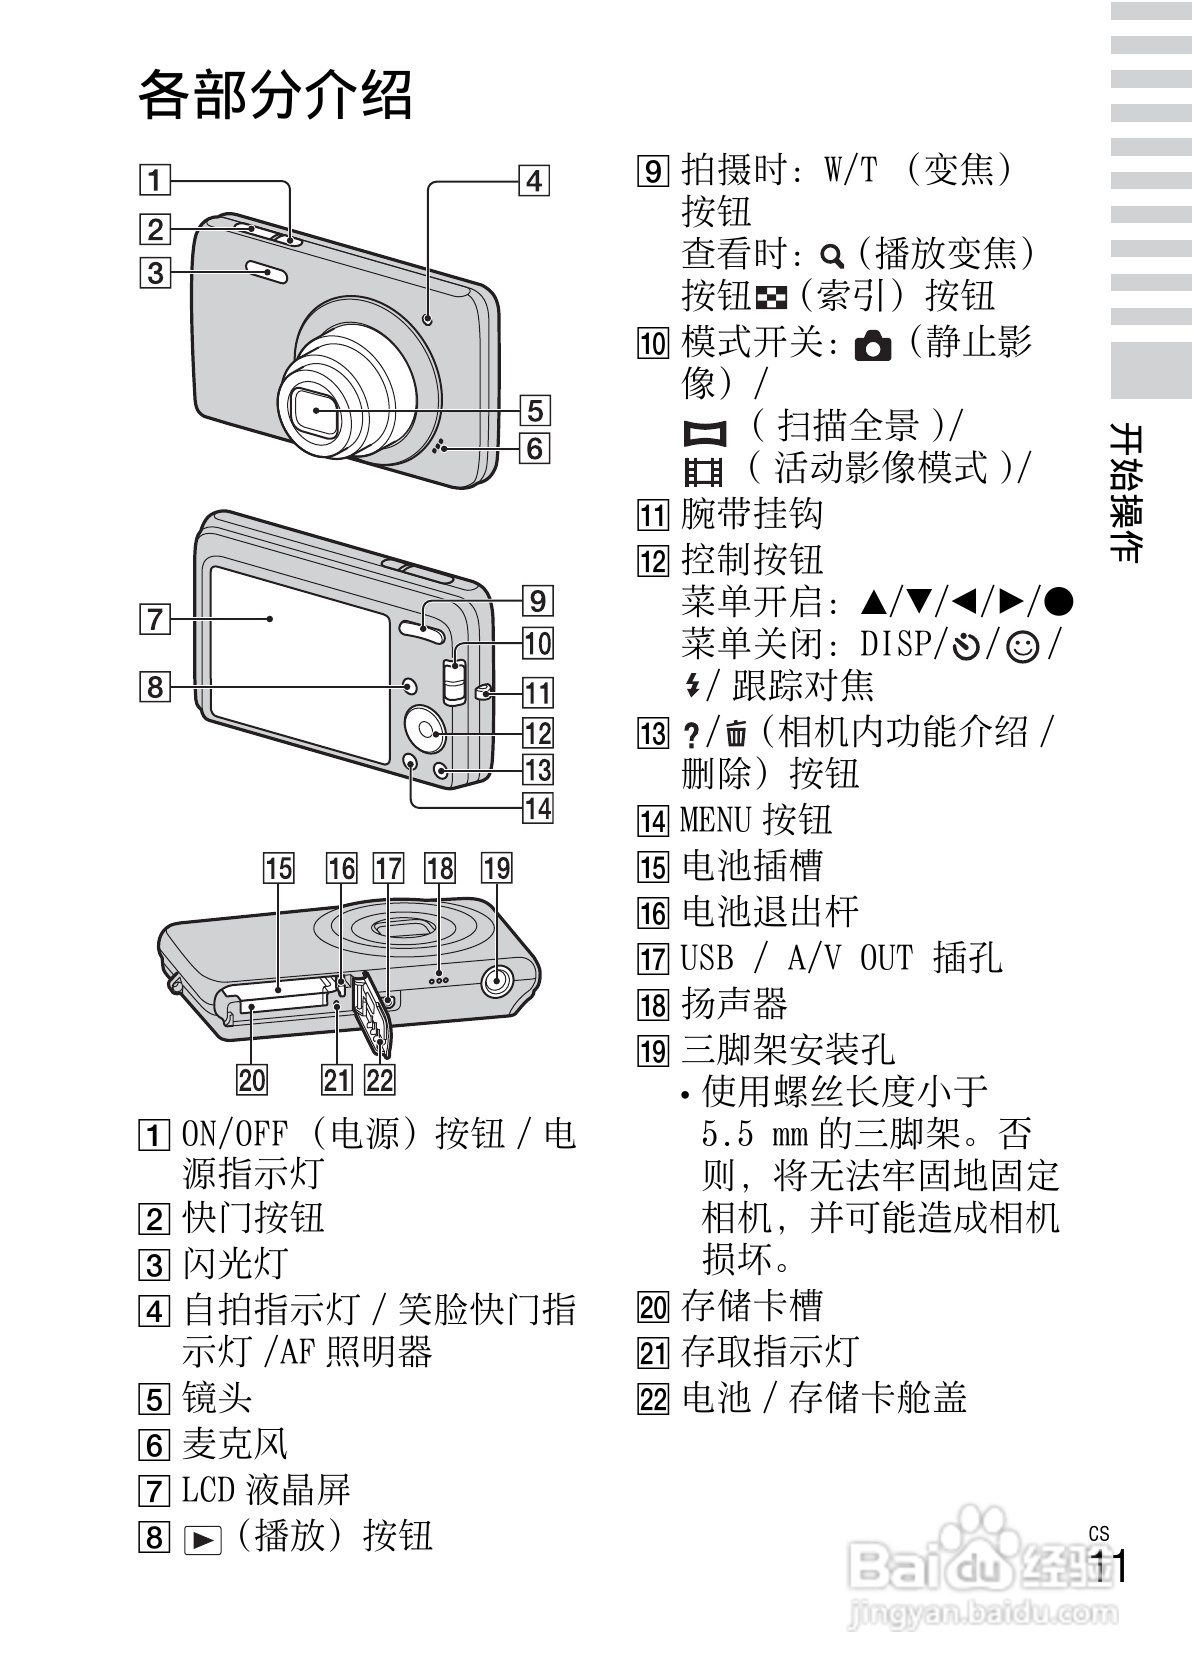 索尼dsc-w670数码相机使用说明书[2]